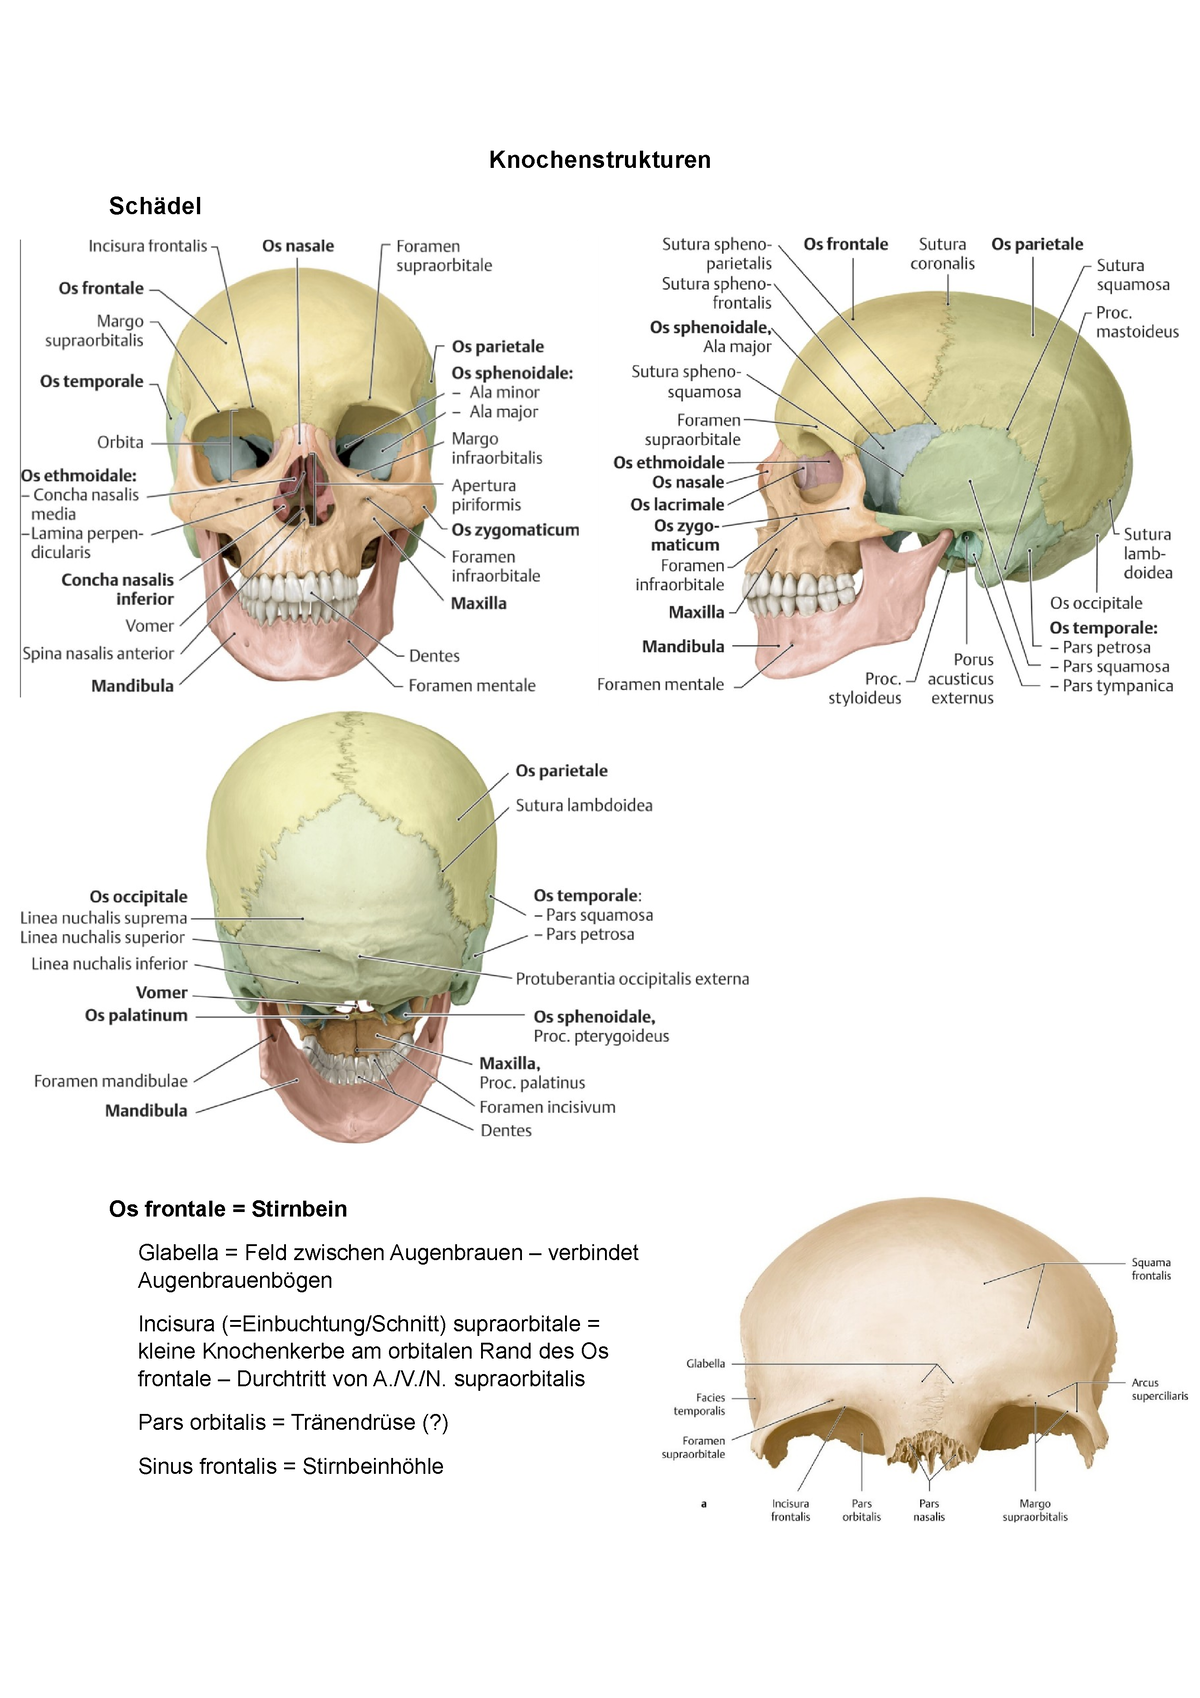 Knochen Termini Ausarbeitung Knochenstrukturen Schädel Os Frontale Stirnbein Glabella 7068